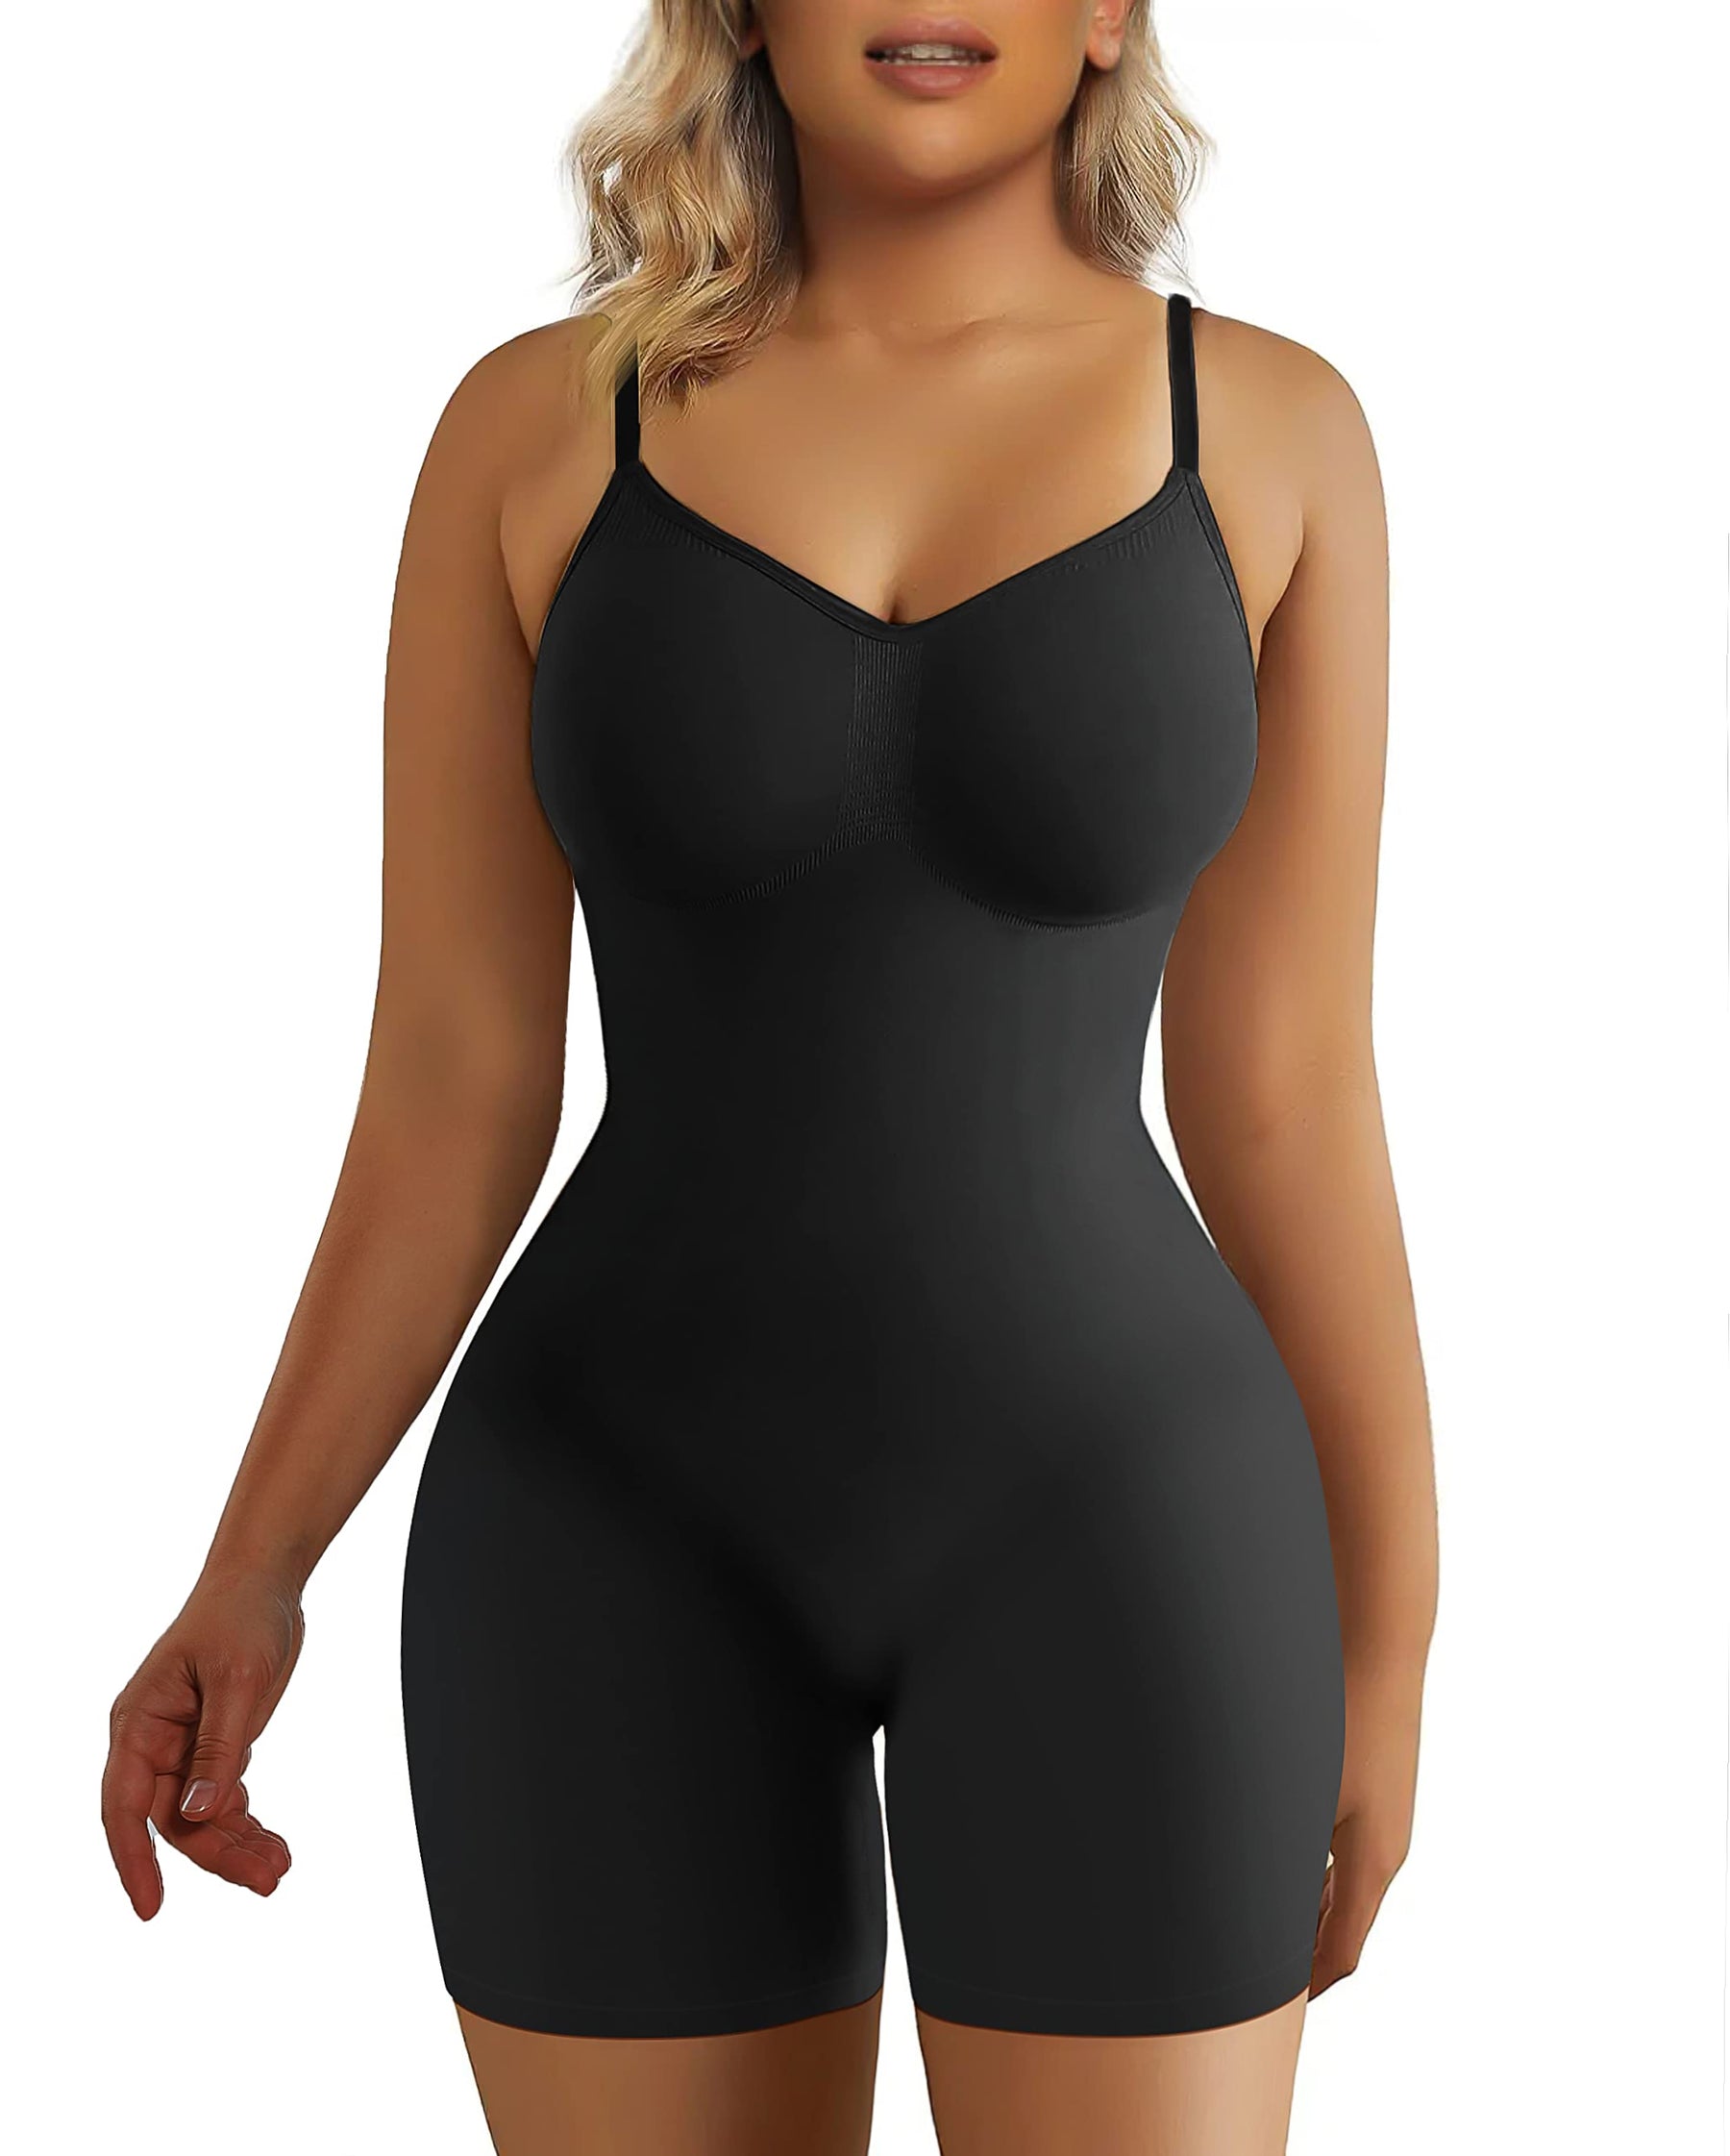 SHAPERX Seamless Tummy Control Bodysuit Full Body Shapewear